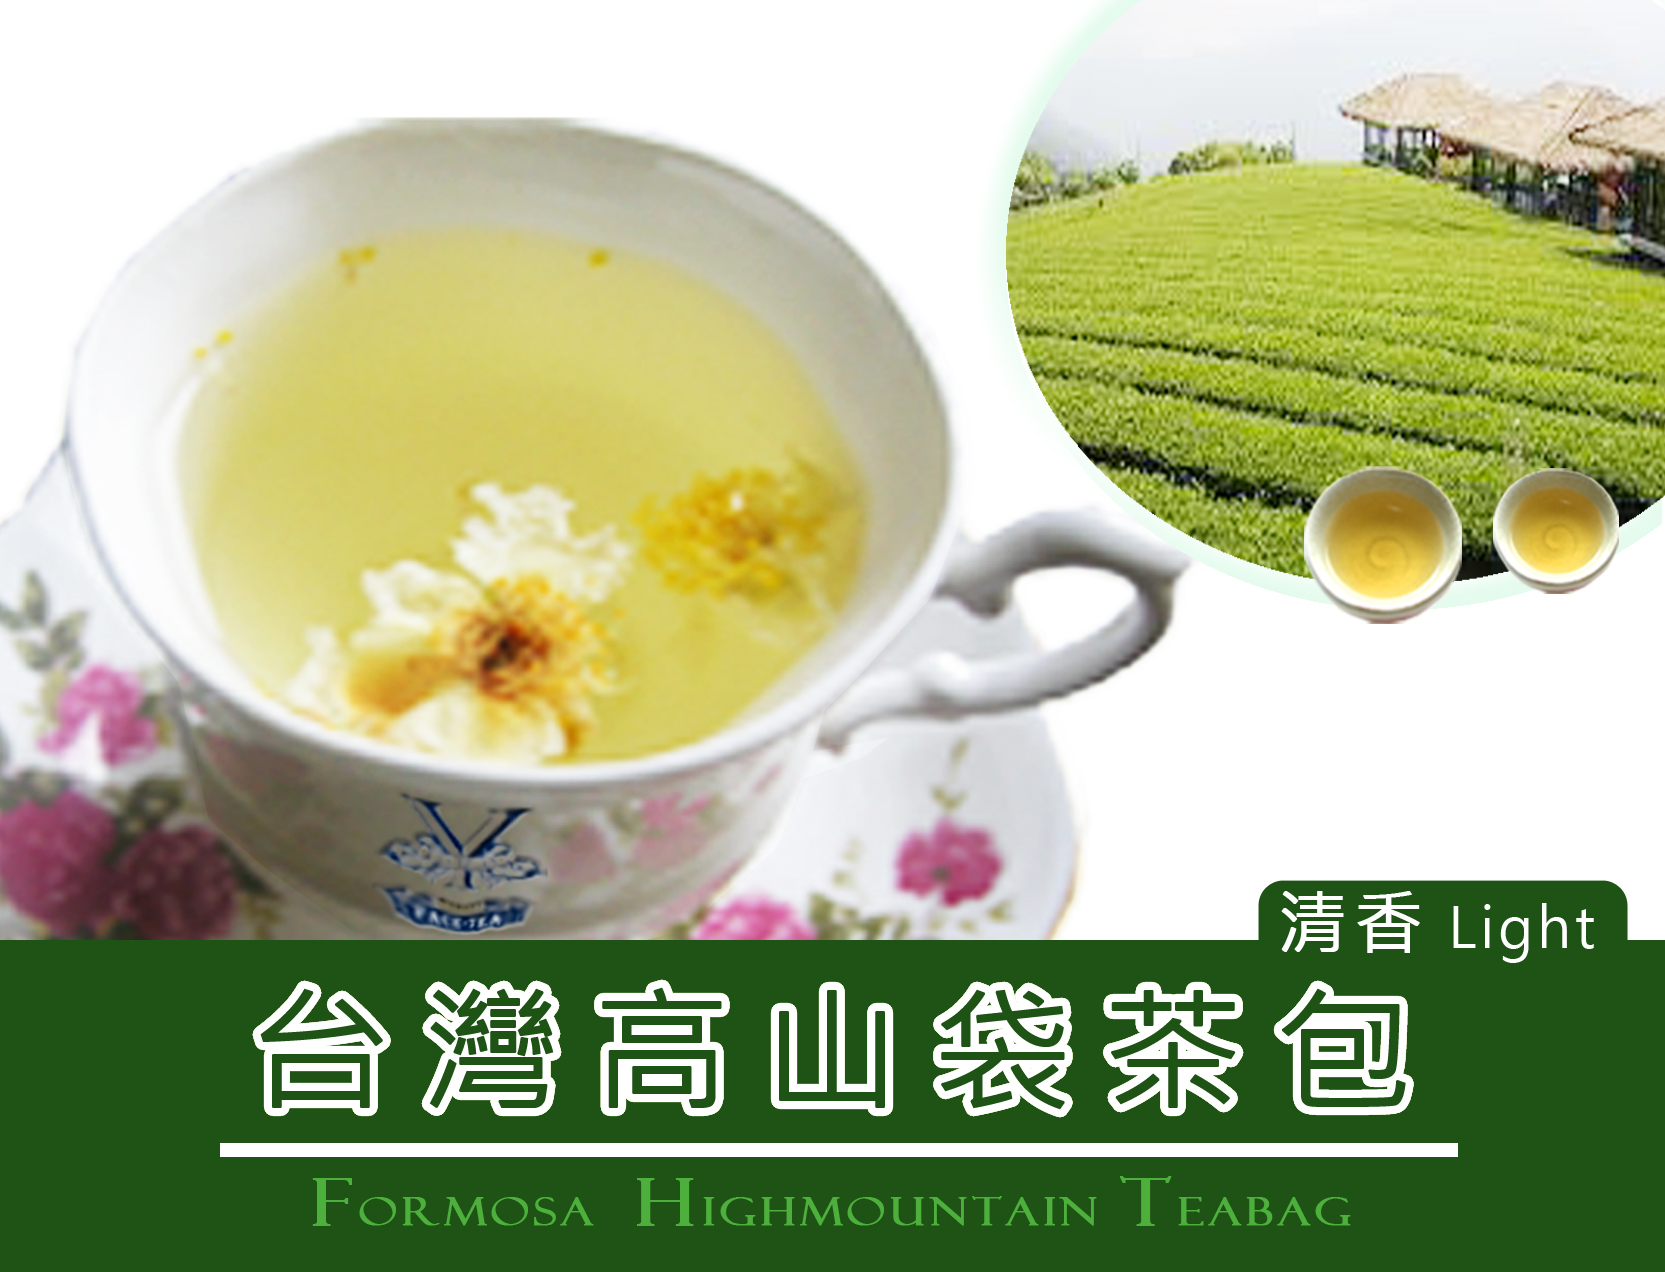 新規購入 Tea Heart R 台湾茶 お茶 阿里山 高山茶 烏龍茶 茶葉 ウーロン茶 Organic Farm SGS Taiwan Ali  therhodesresidences.com